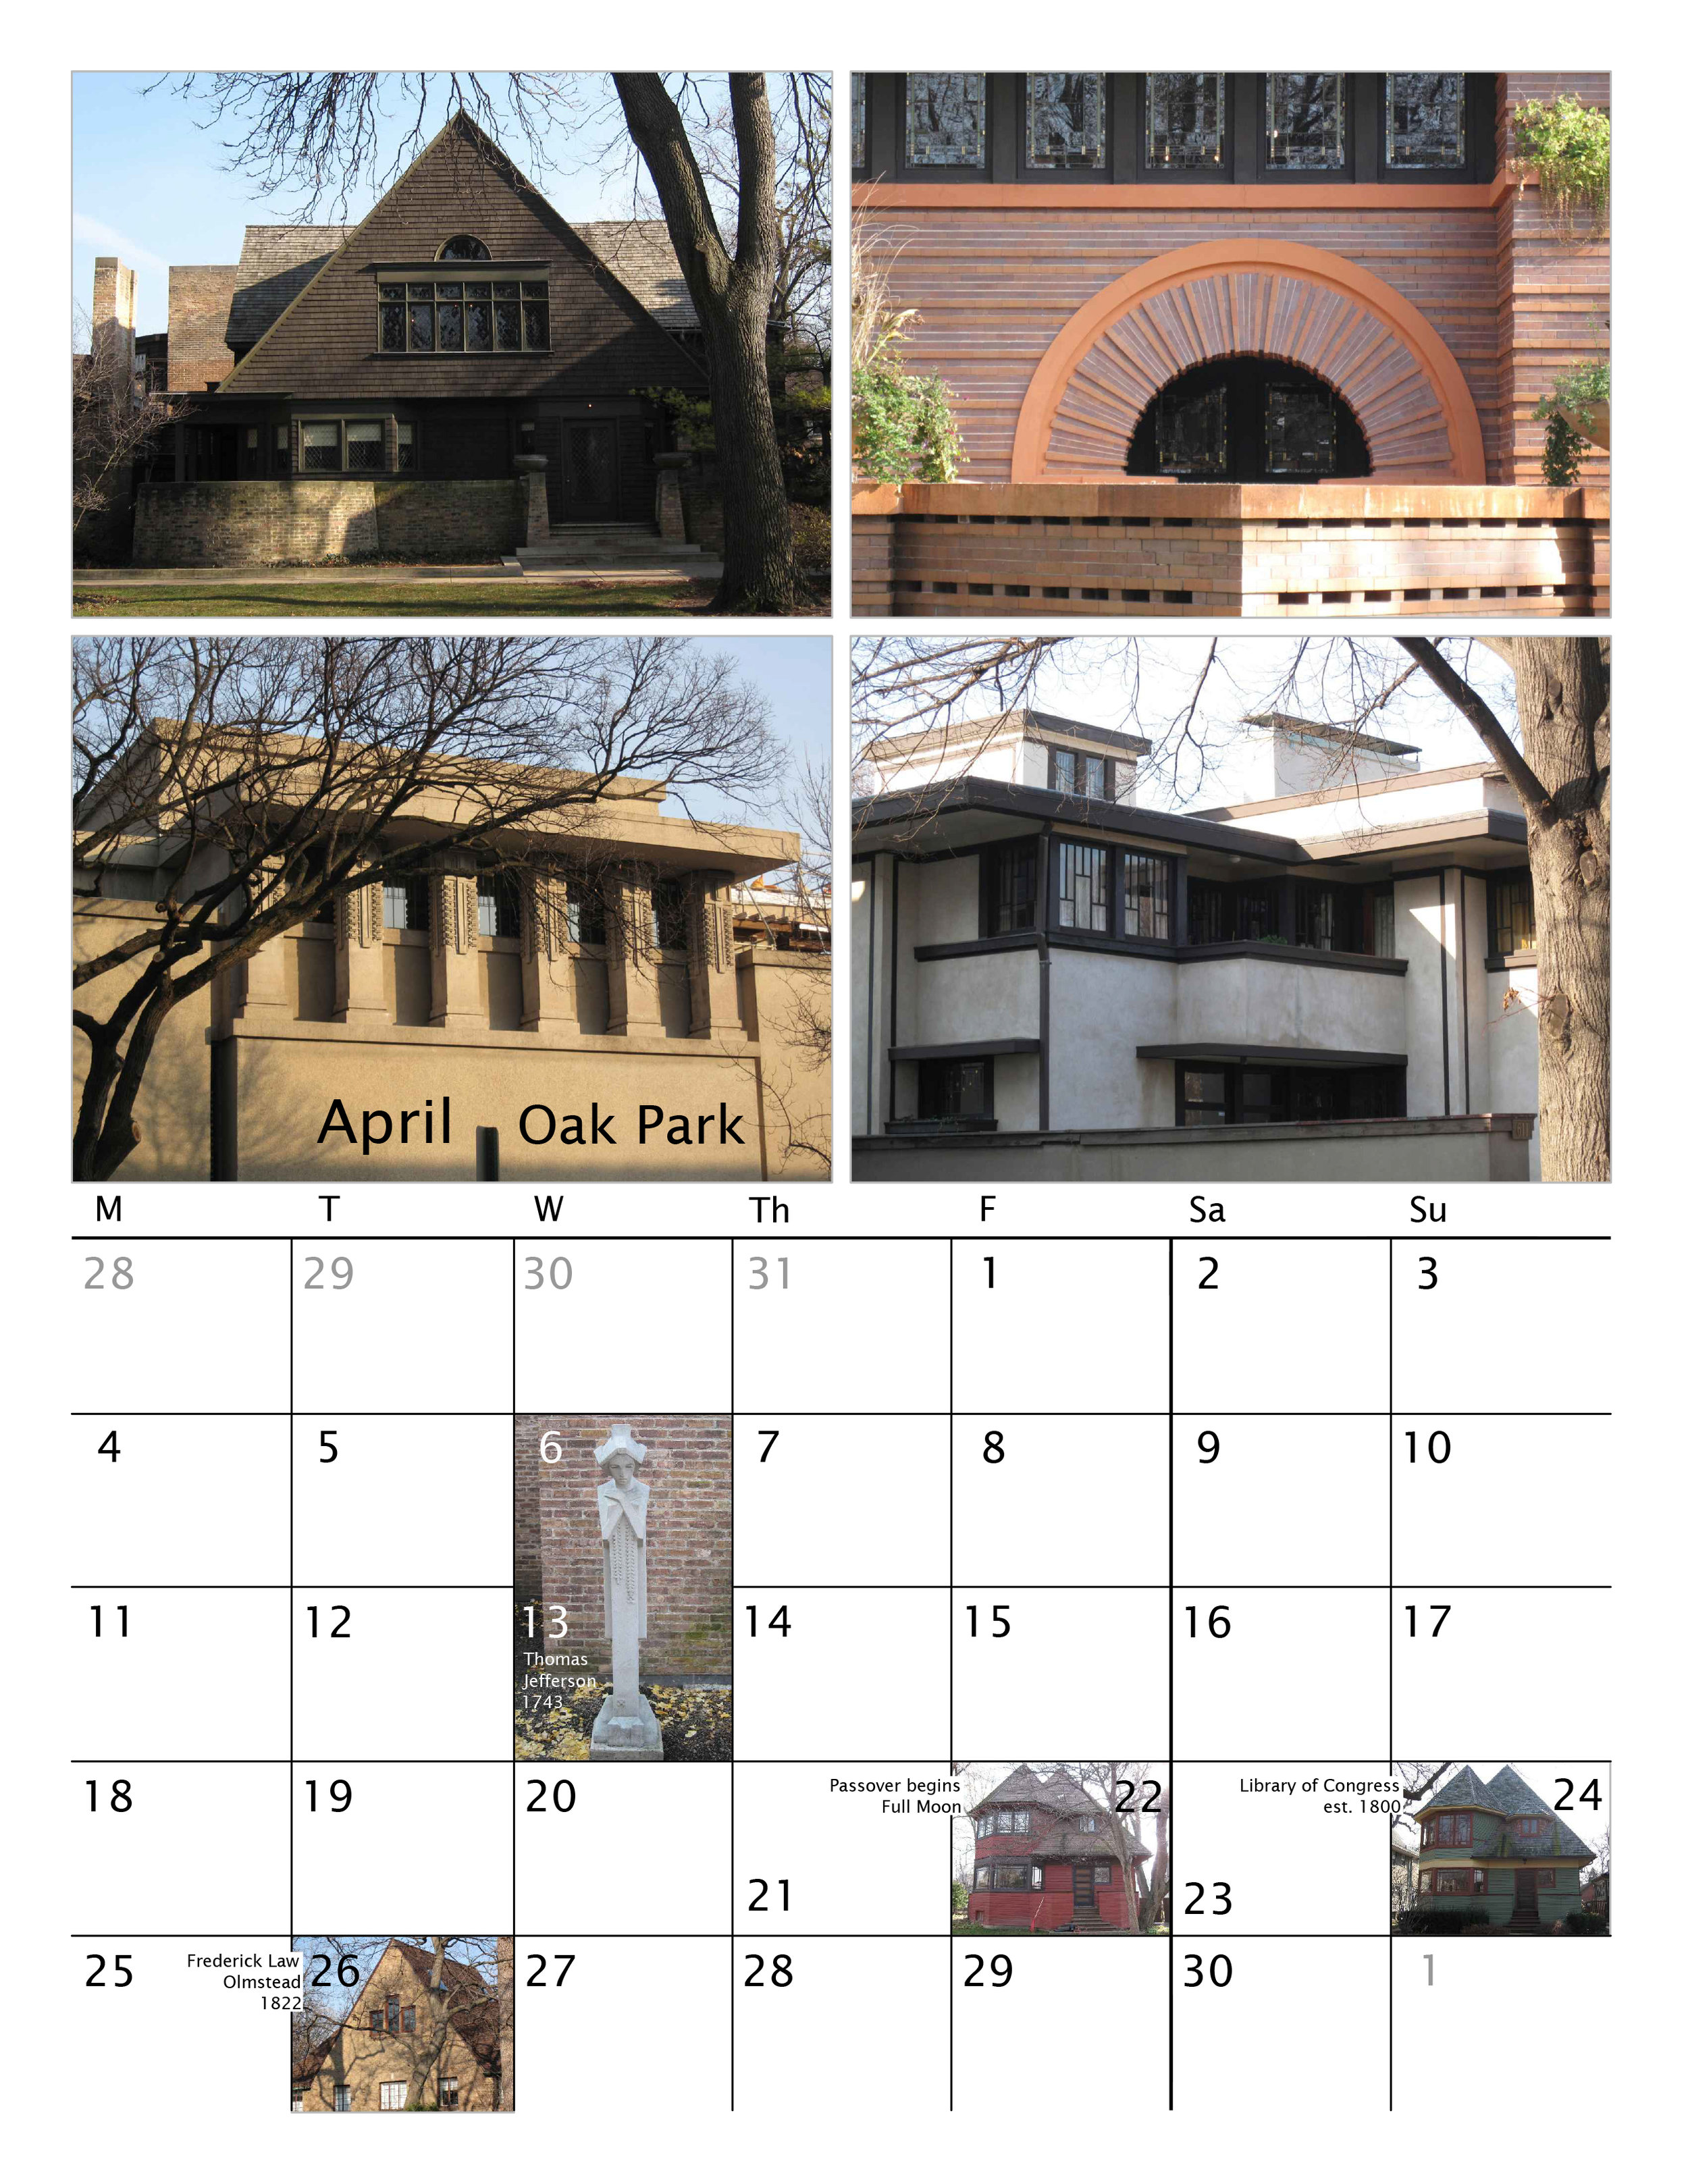 4.Apr.OakPark.jpg